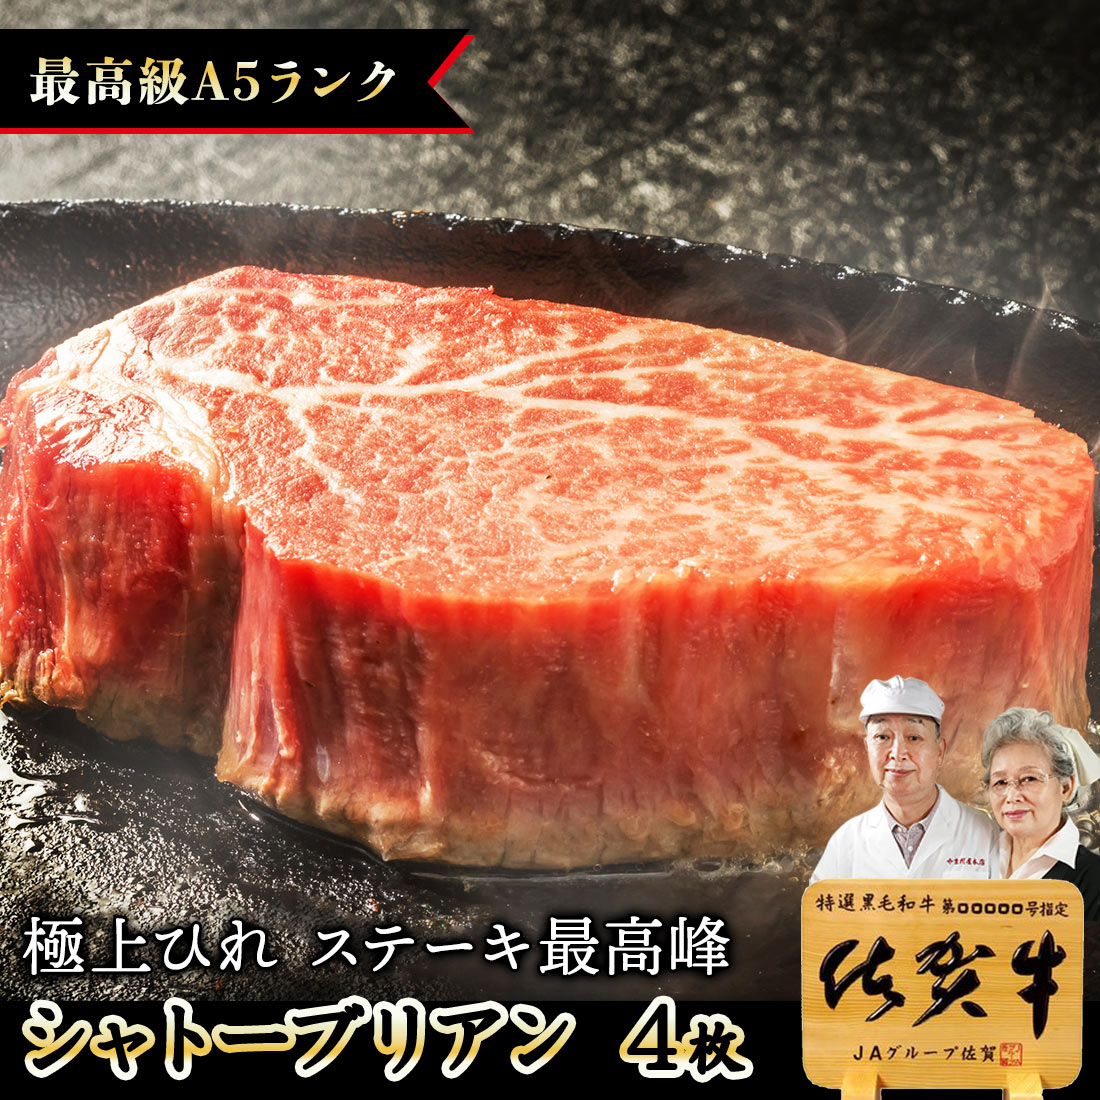 超美品 / 150g4枚 シャトーブリアン ステーキ 宮崎牛 クーポン使用可能佐賀牛 A5 赤身 黒毛和牛 牛肉